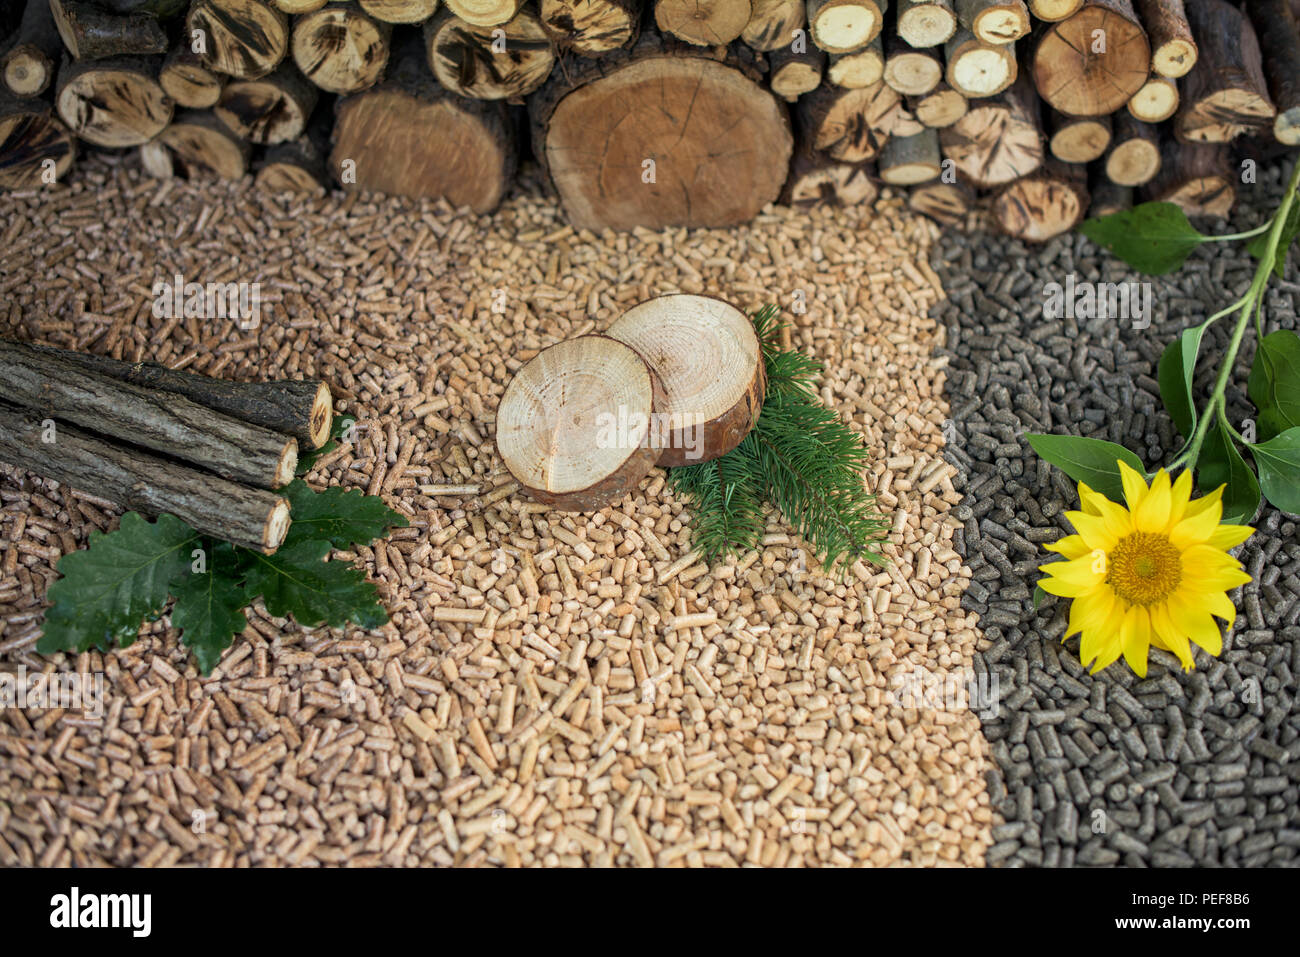 Erneuerbare Energie - Pellets aus verschiedenen reneable Materialien - Eiche, Kiefer, Sonnenblumen Stockfoto